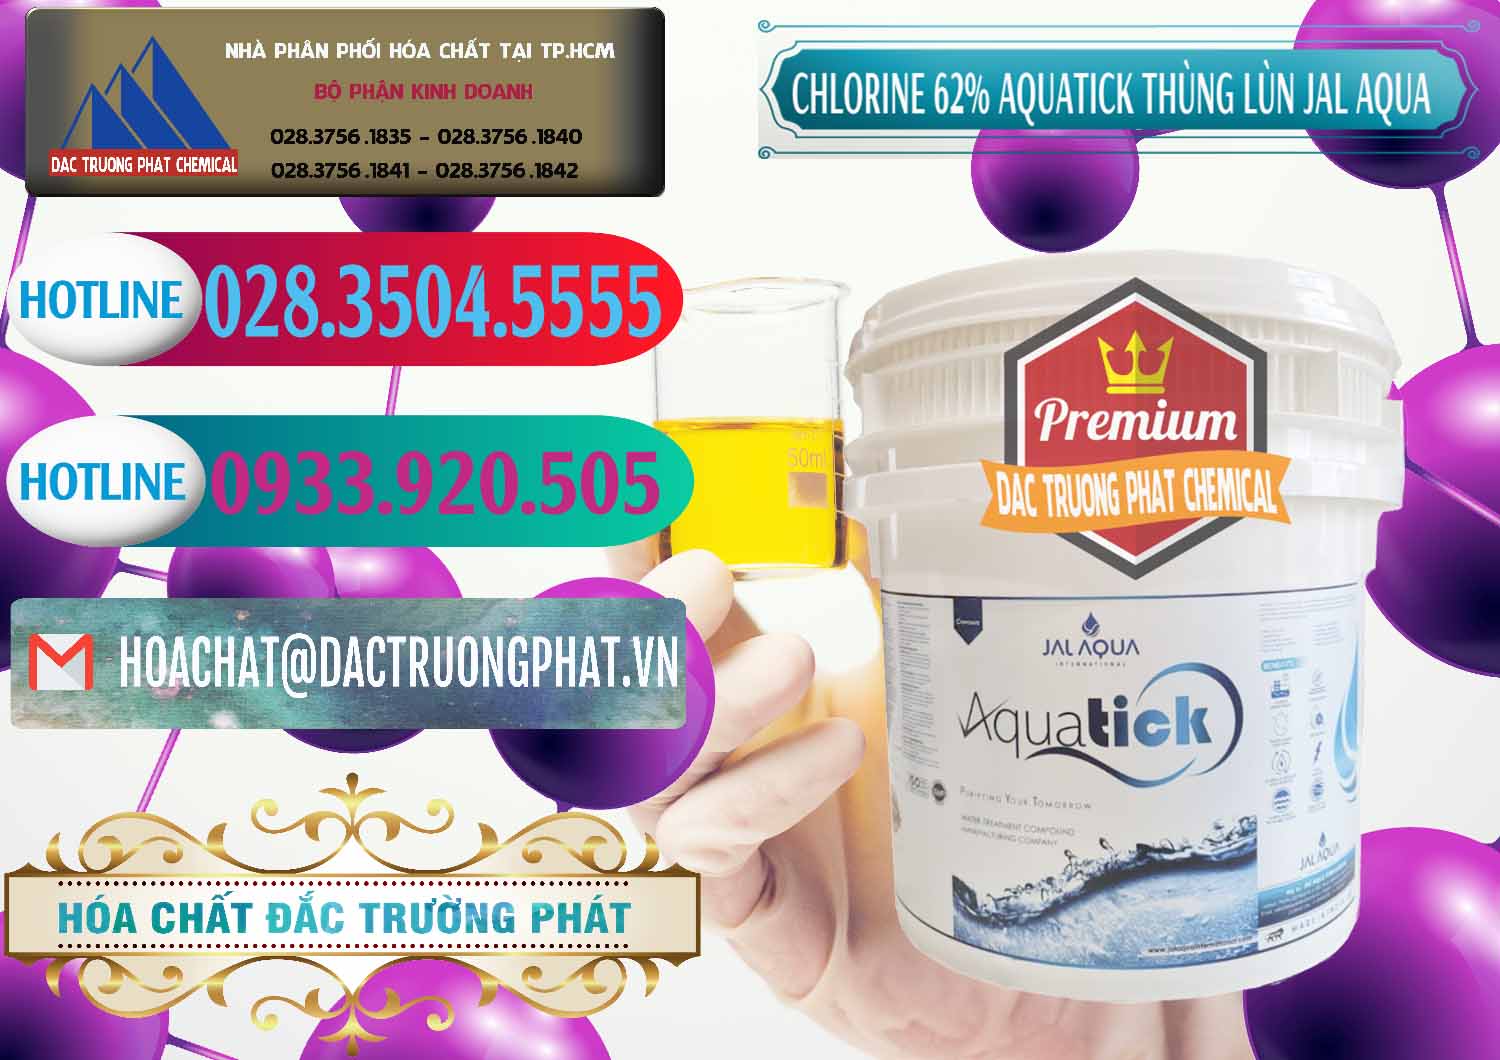 Nơi chuyên bán _ cung ứng Chlorine – Clorin 62% Aquatick Thùng Lùn Jal Aqua Ấn Độ India - 0238 - Nơi nhập khẩu - phân phối hóa chất tại TP.HCM - truongphat.vn